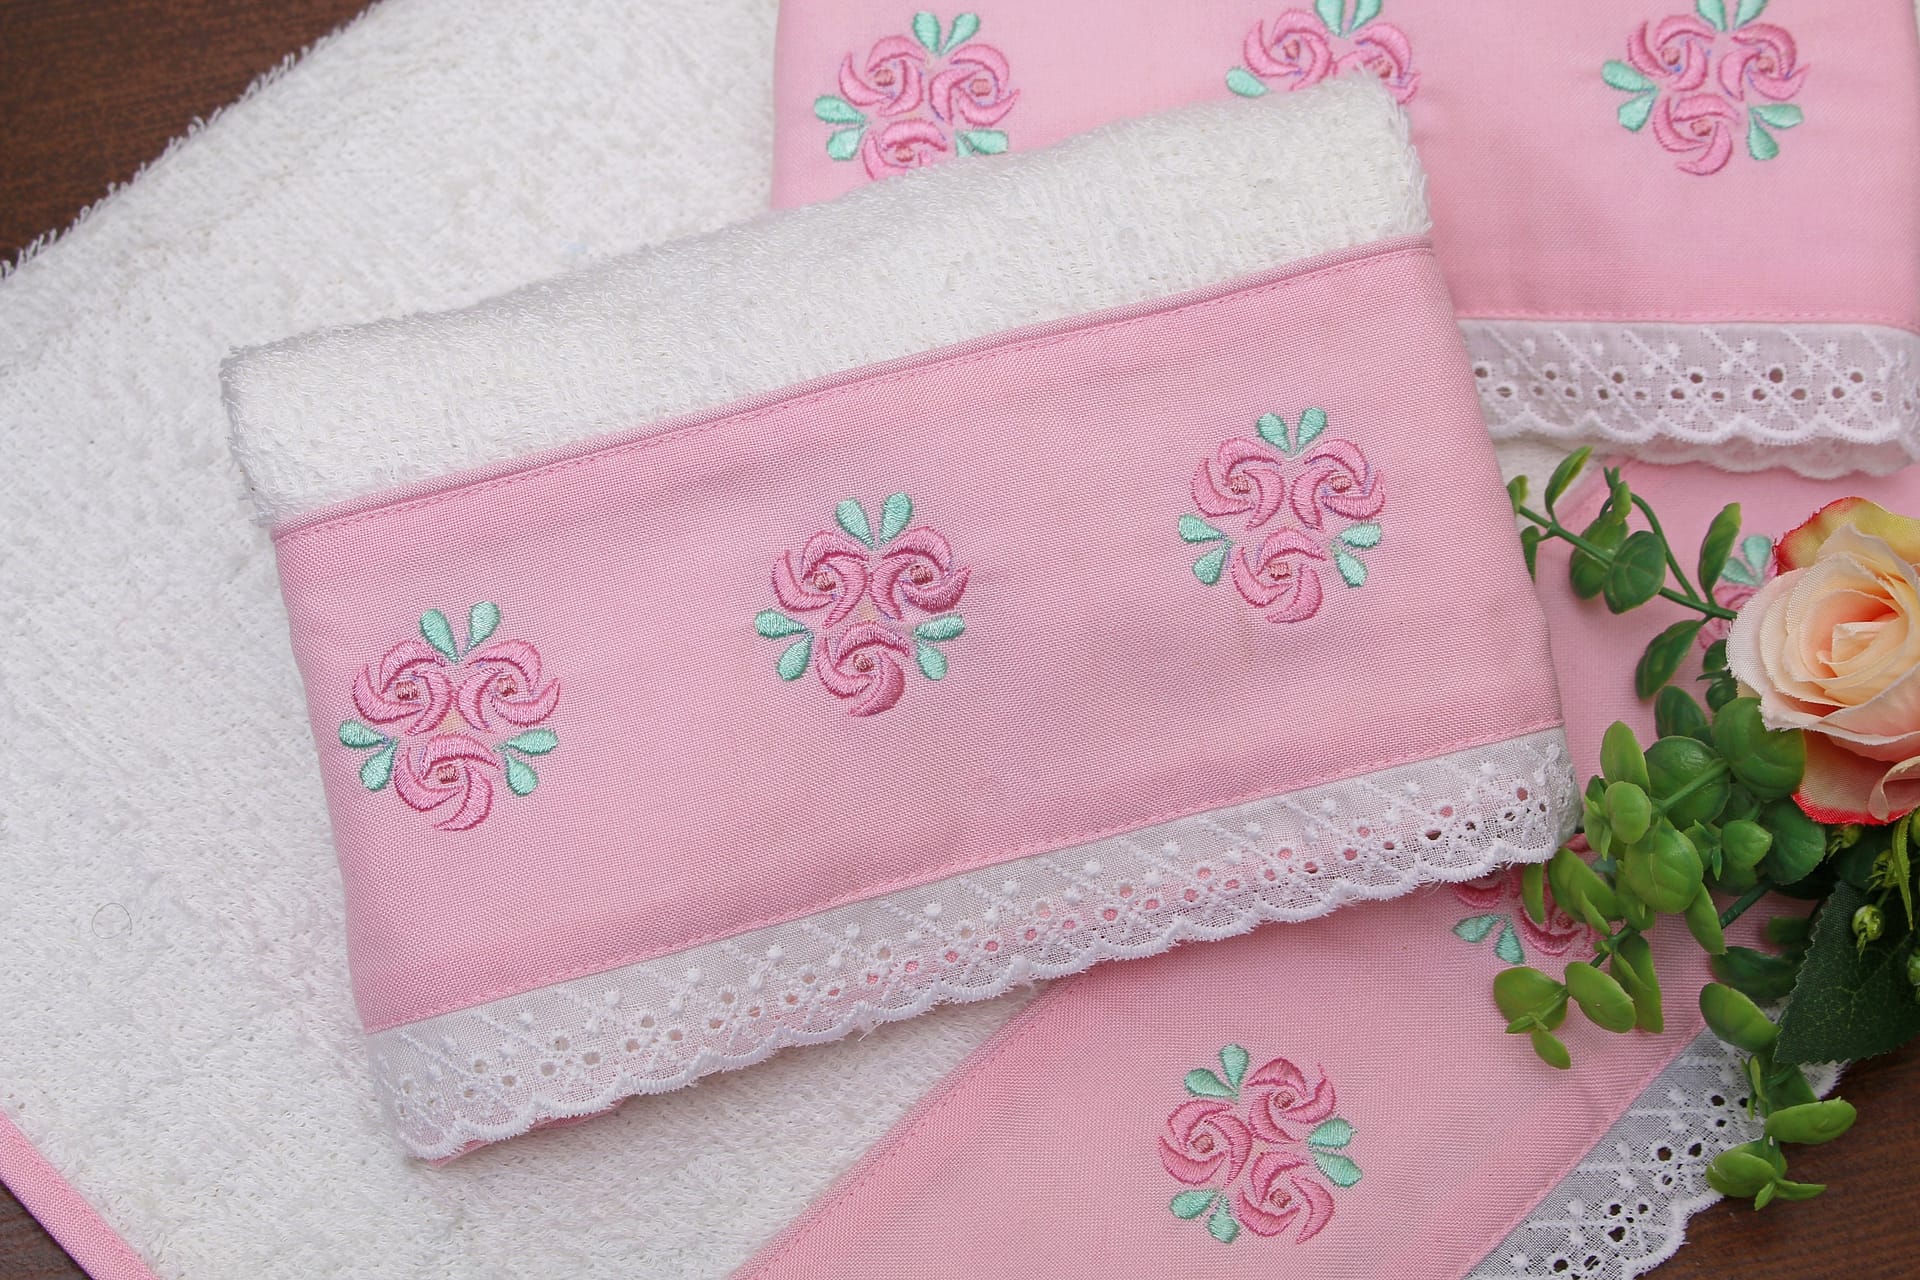 White embroidered towel set – Hum Dastkaar